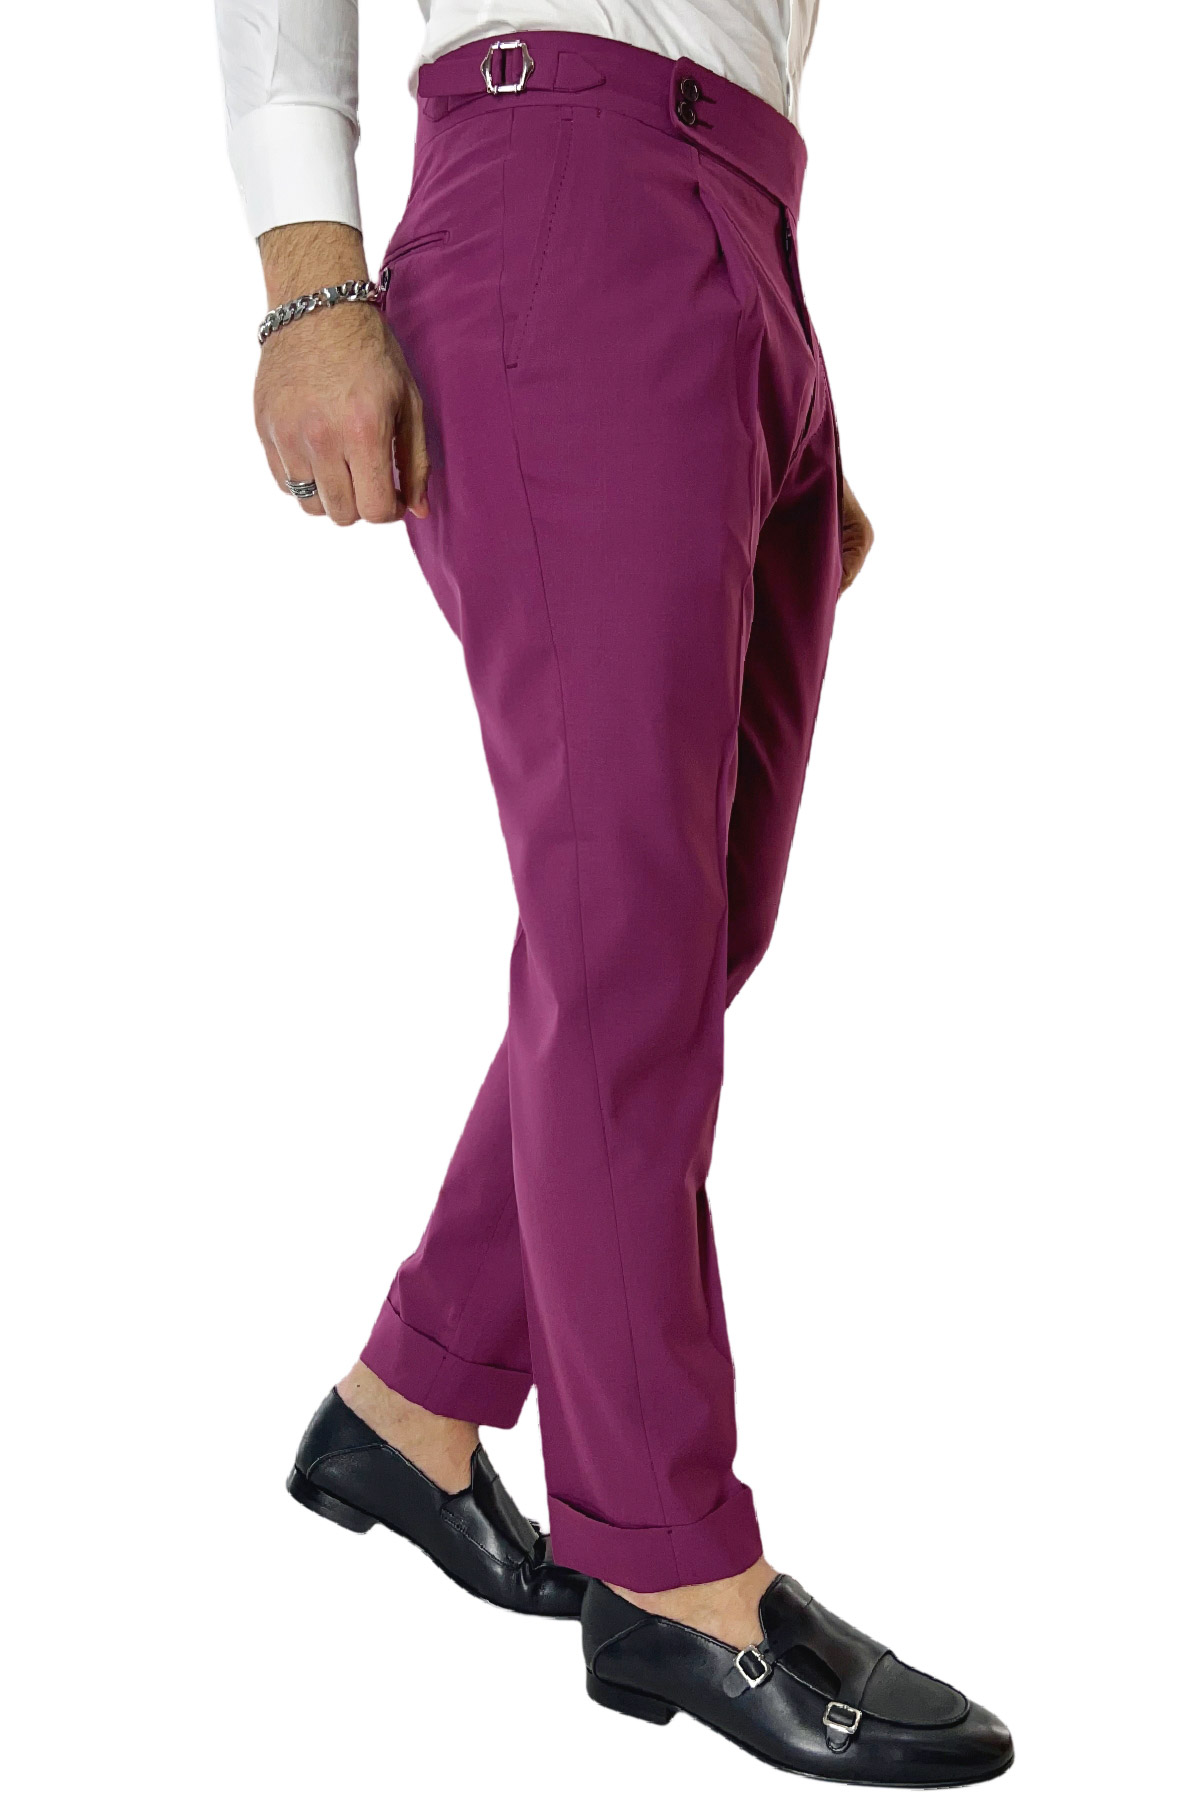 Pantalone uomo vinaccia in fresco lana 100's Holland & Sherry vita alta con pinces fibbie laterali e risvolto 4cm